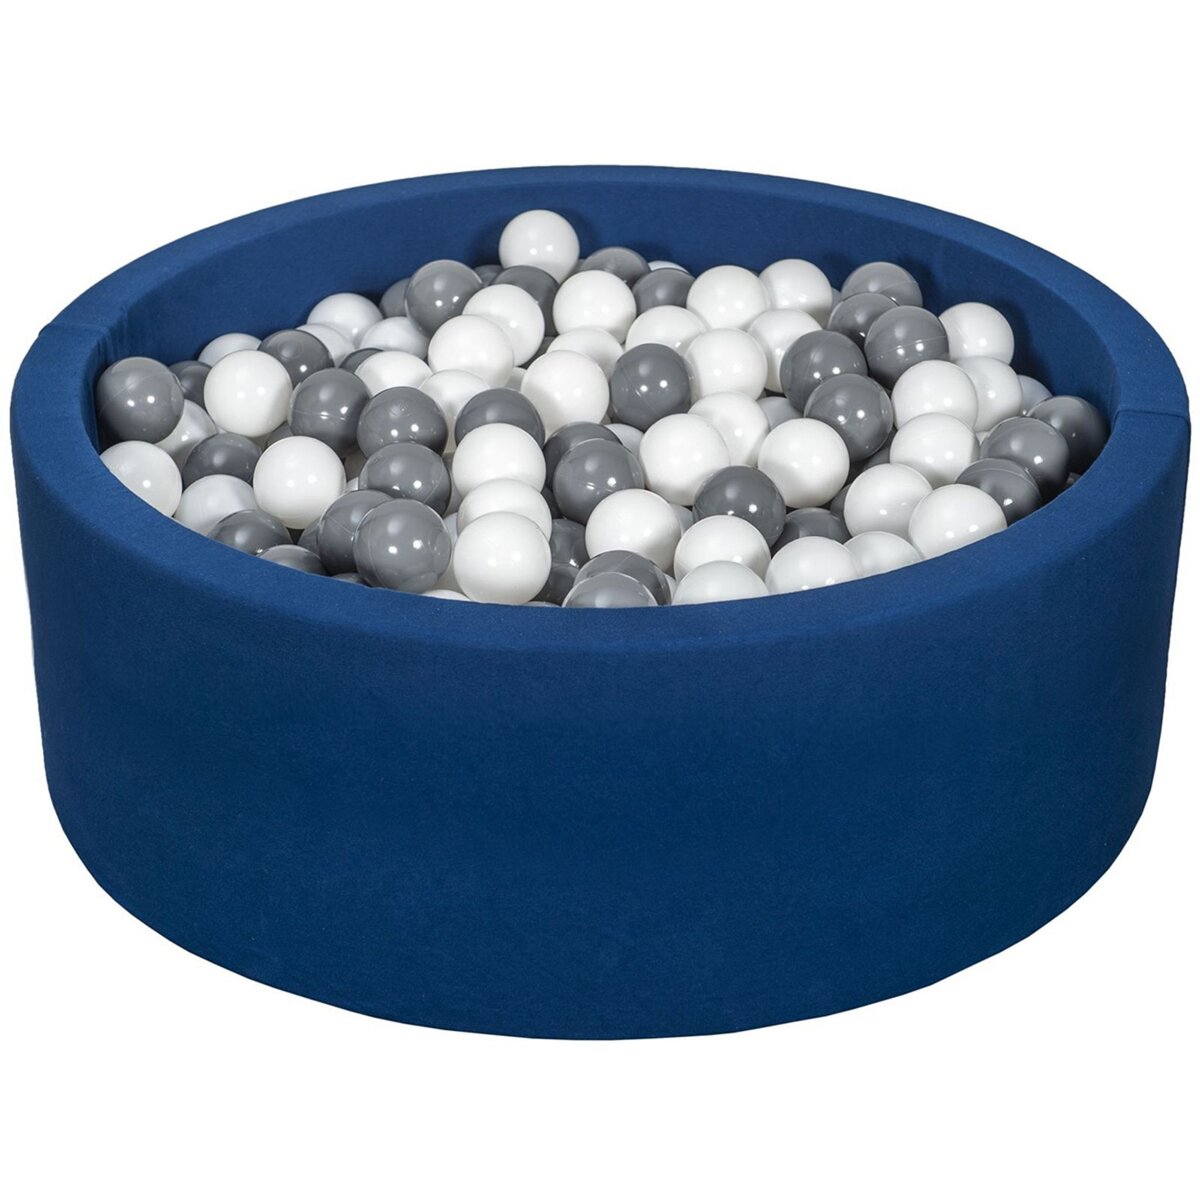  Piscine à balles Aire de jeu + 450 balles bleu marine blanc,gris